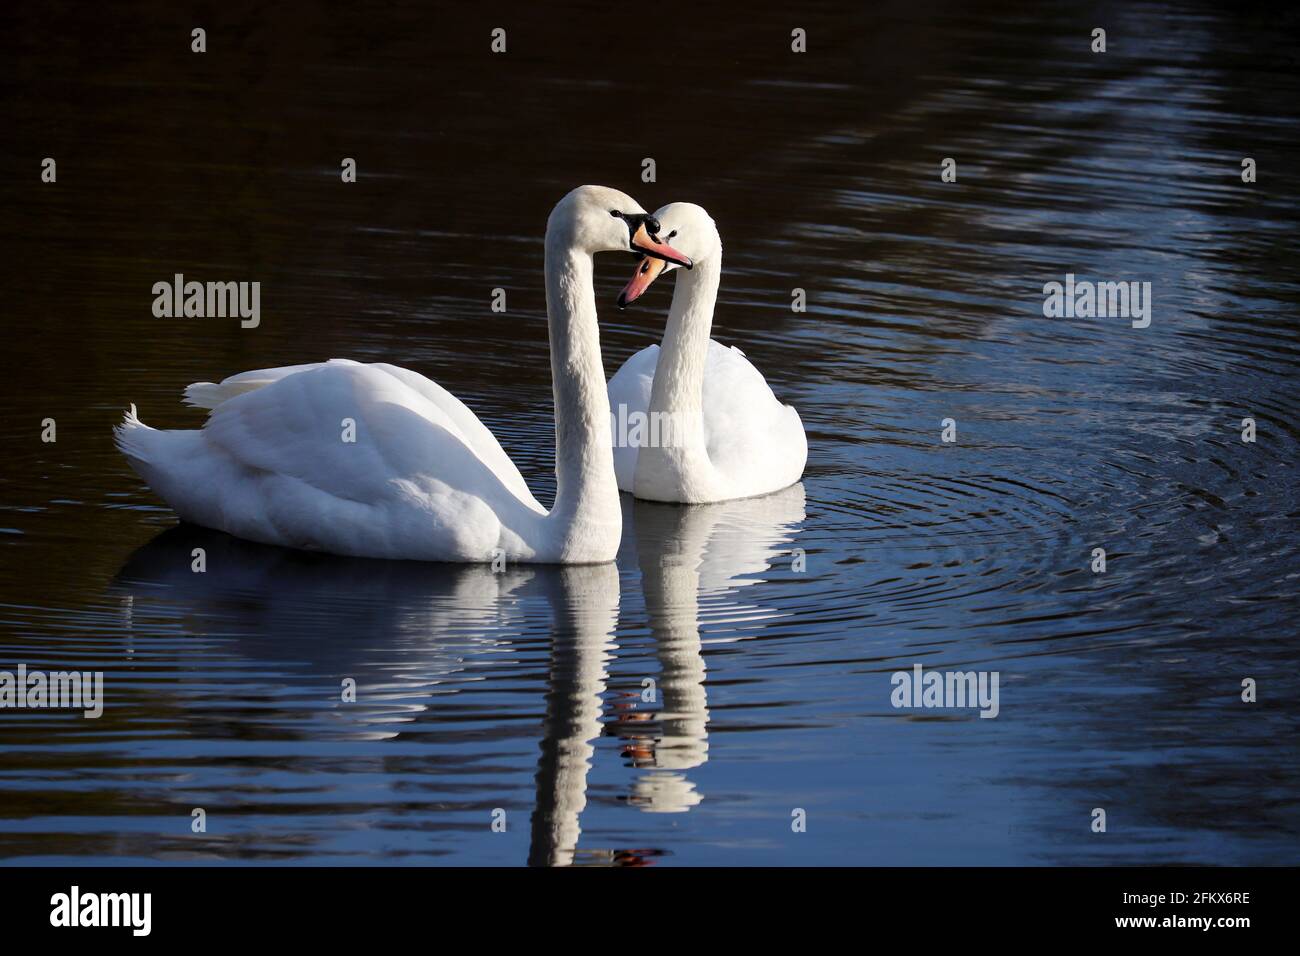 Couple de cygnes blancs nageant sur un lac, réflexion sur la surface de l'eau. Scène romantique, concept d'amour et de fidélité Banque D'Images